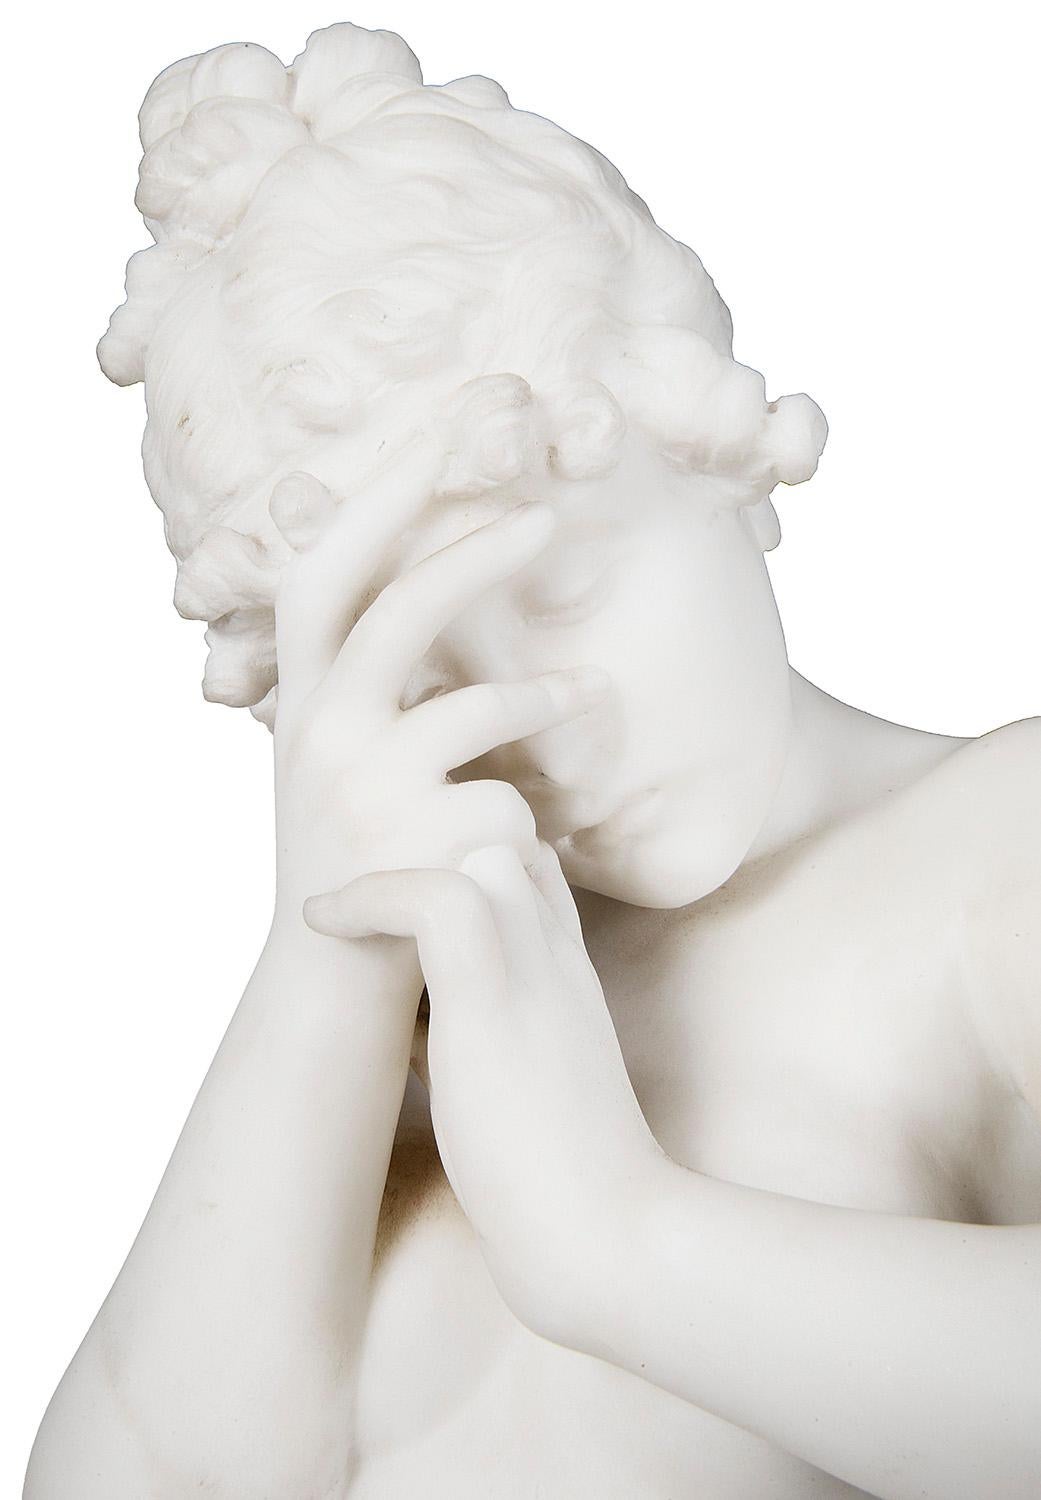 Enchanteresse statue italienne en marbre Carrera du XIXe siècle représentant une jeune fille nue debout, dans une pose triste, à côté d'un vase cassé.
 